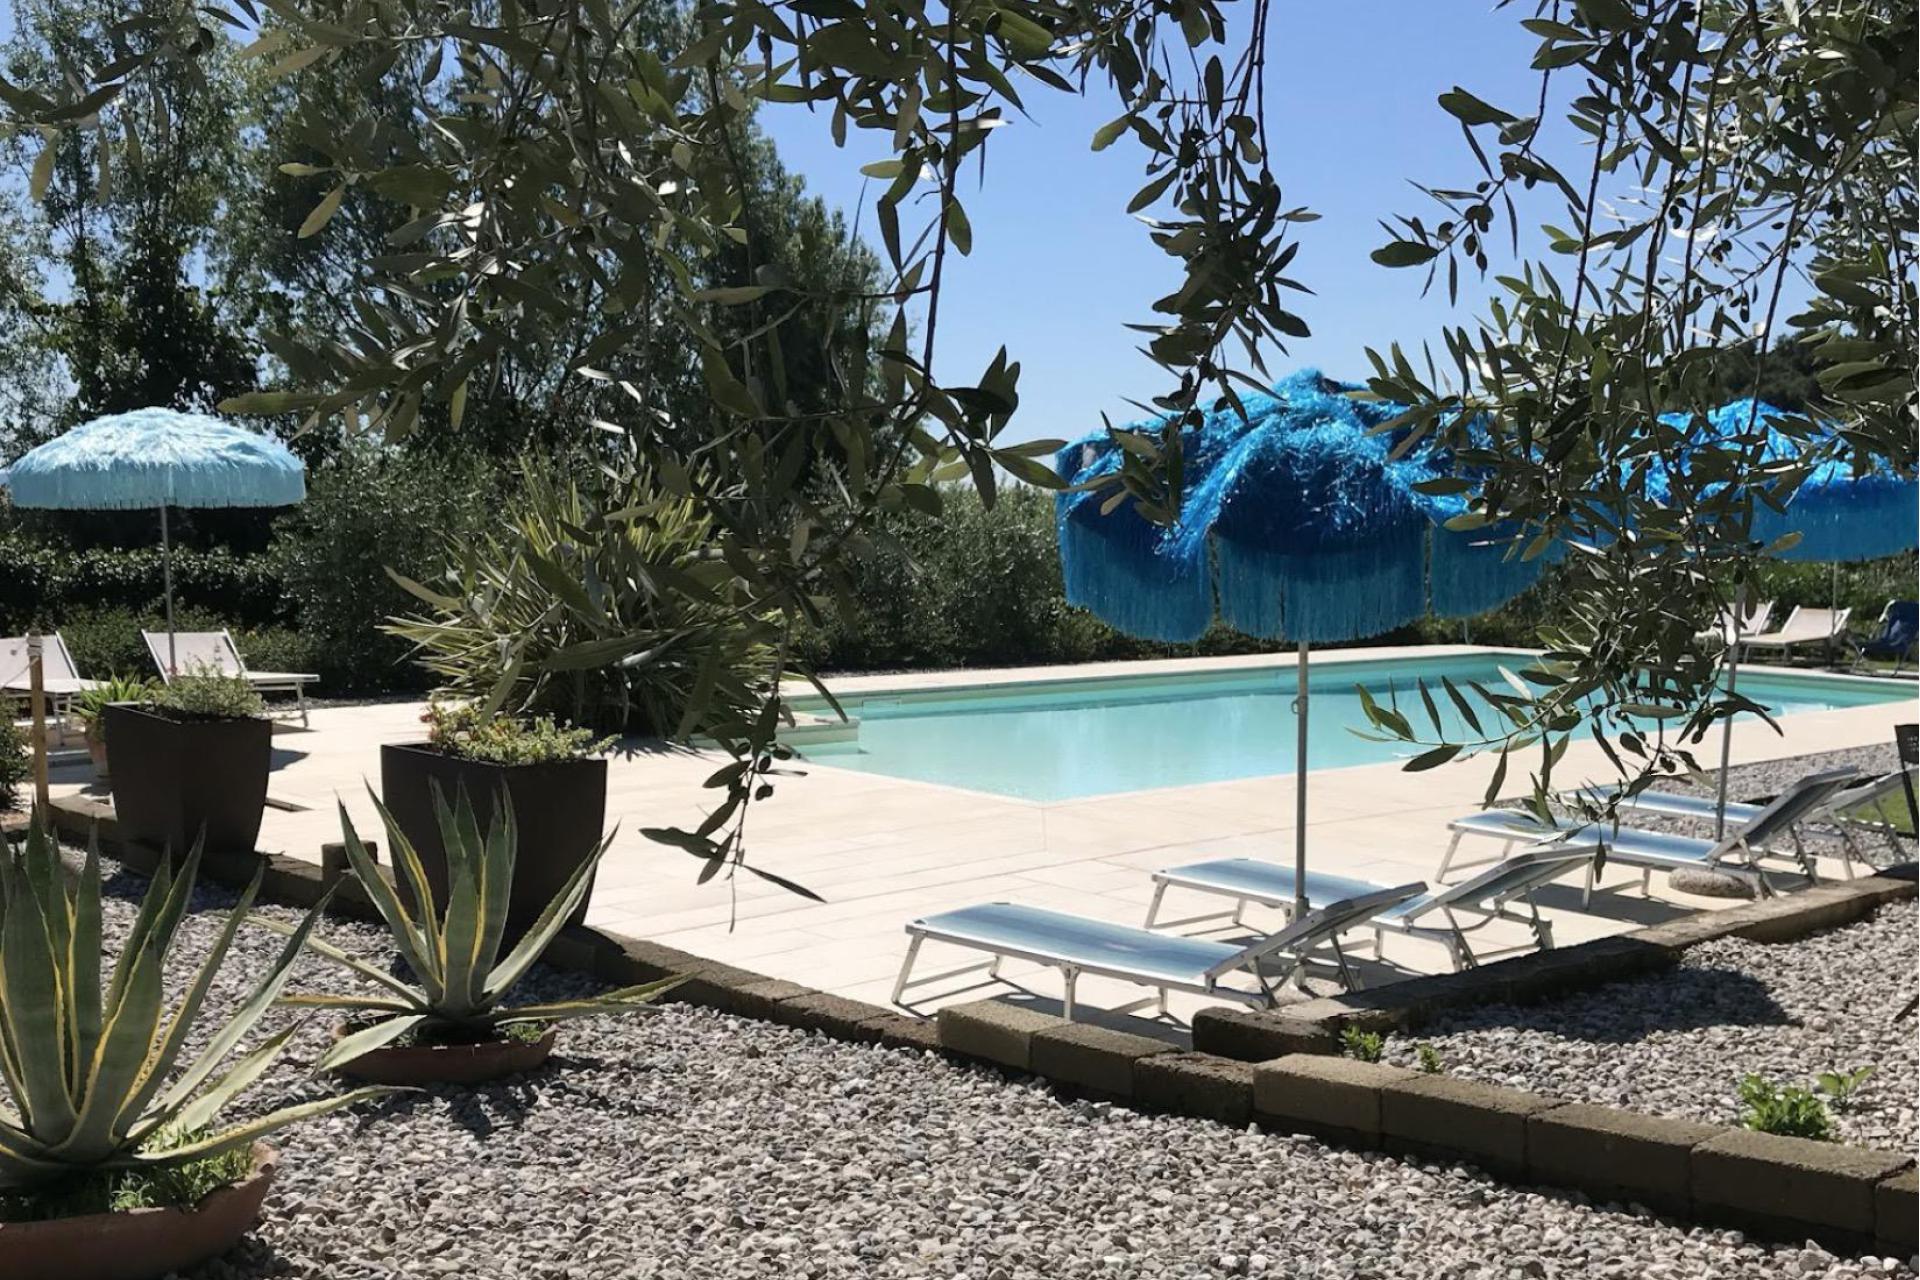 Agriturismo mit Ferienwohnungen Gardasee, klein und inmitten der Olivenbäume